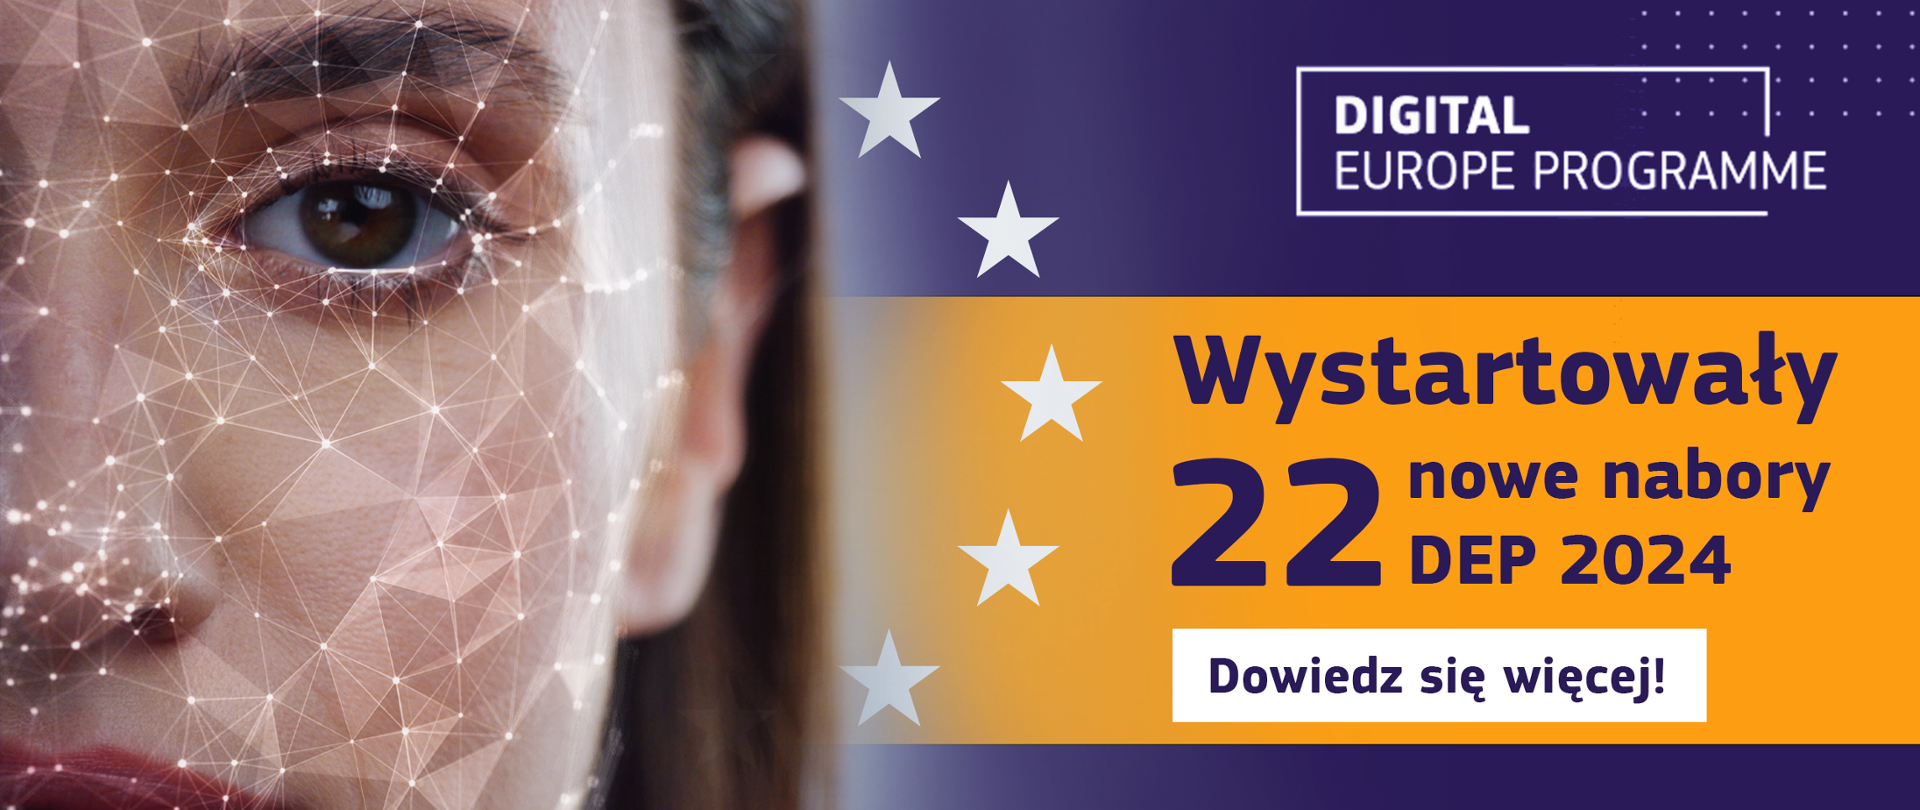 Wystartowały 22 nowe nabory DEP 2024. Dowiedz się więcej! Logo Digital Europe Programme.